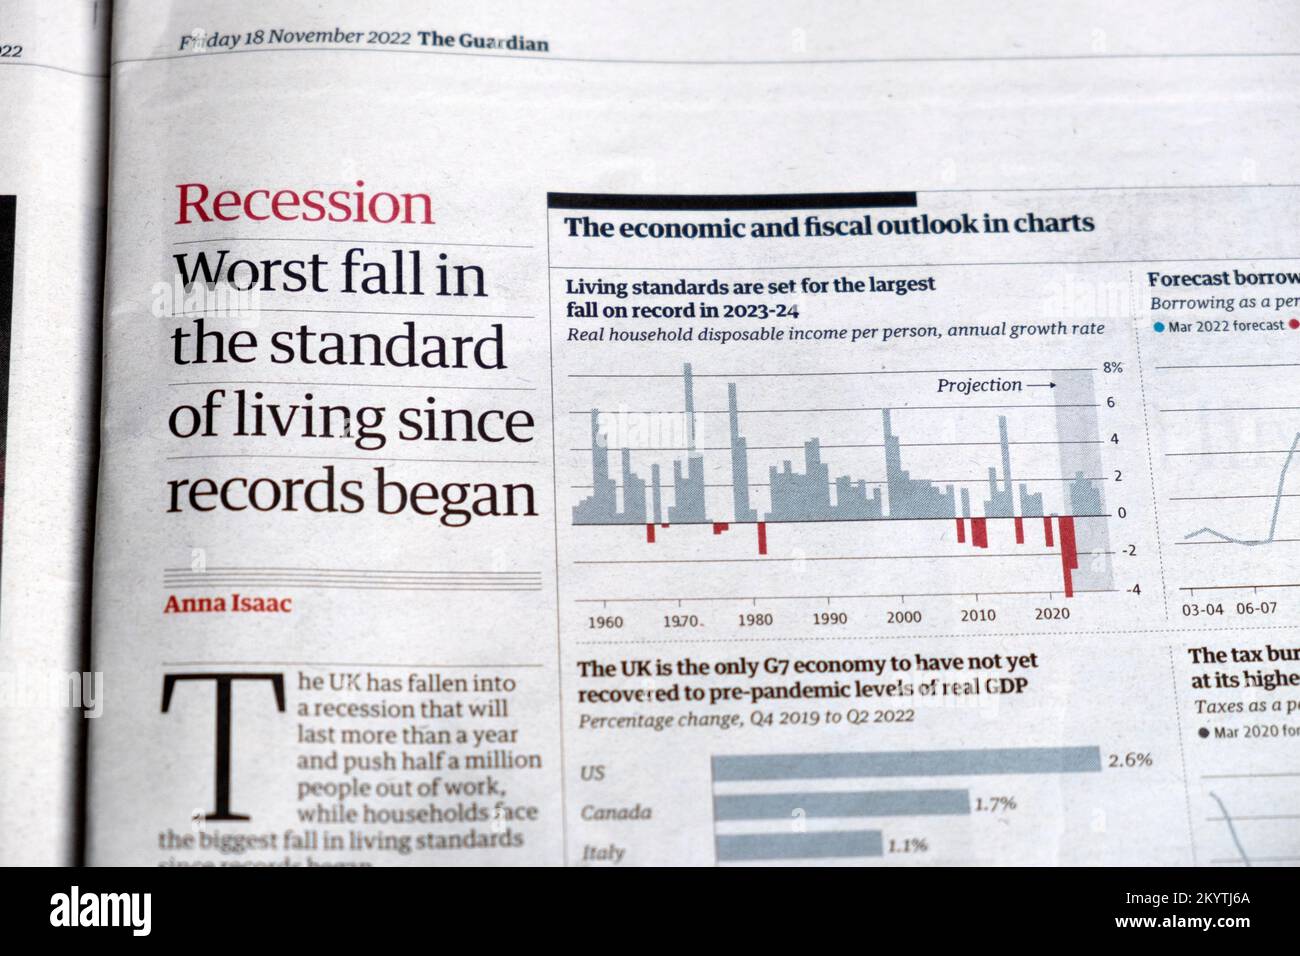 "Rezession schlimmster Ausfall des Lebensstandards seit Beginn der Rekorde" Schlagzeile der Zeitung Guardian Britische Wirtschaft, Schnitt am 18. November 2022 London UK Stockfoto